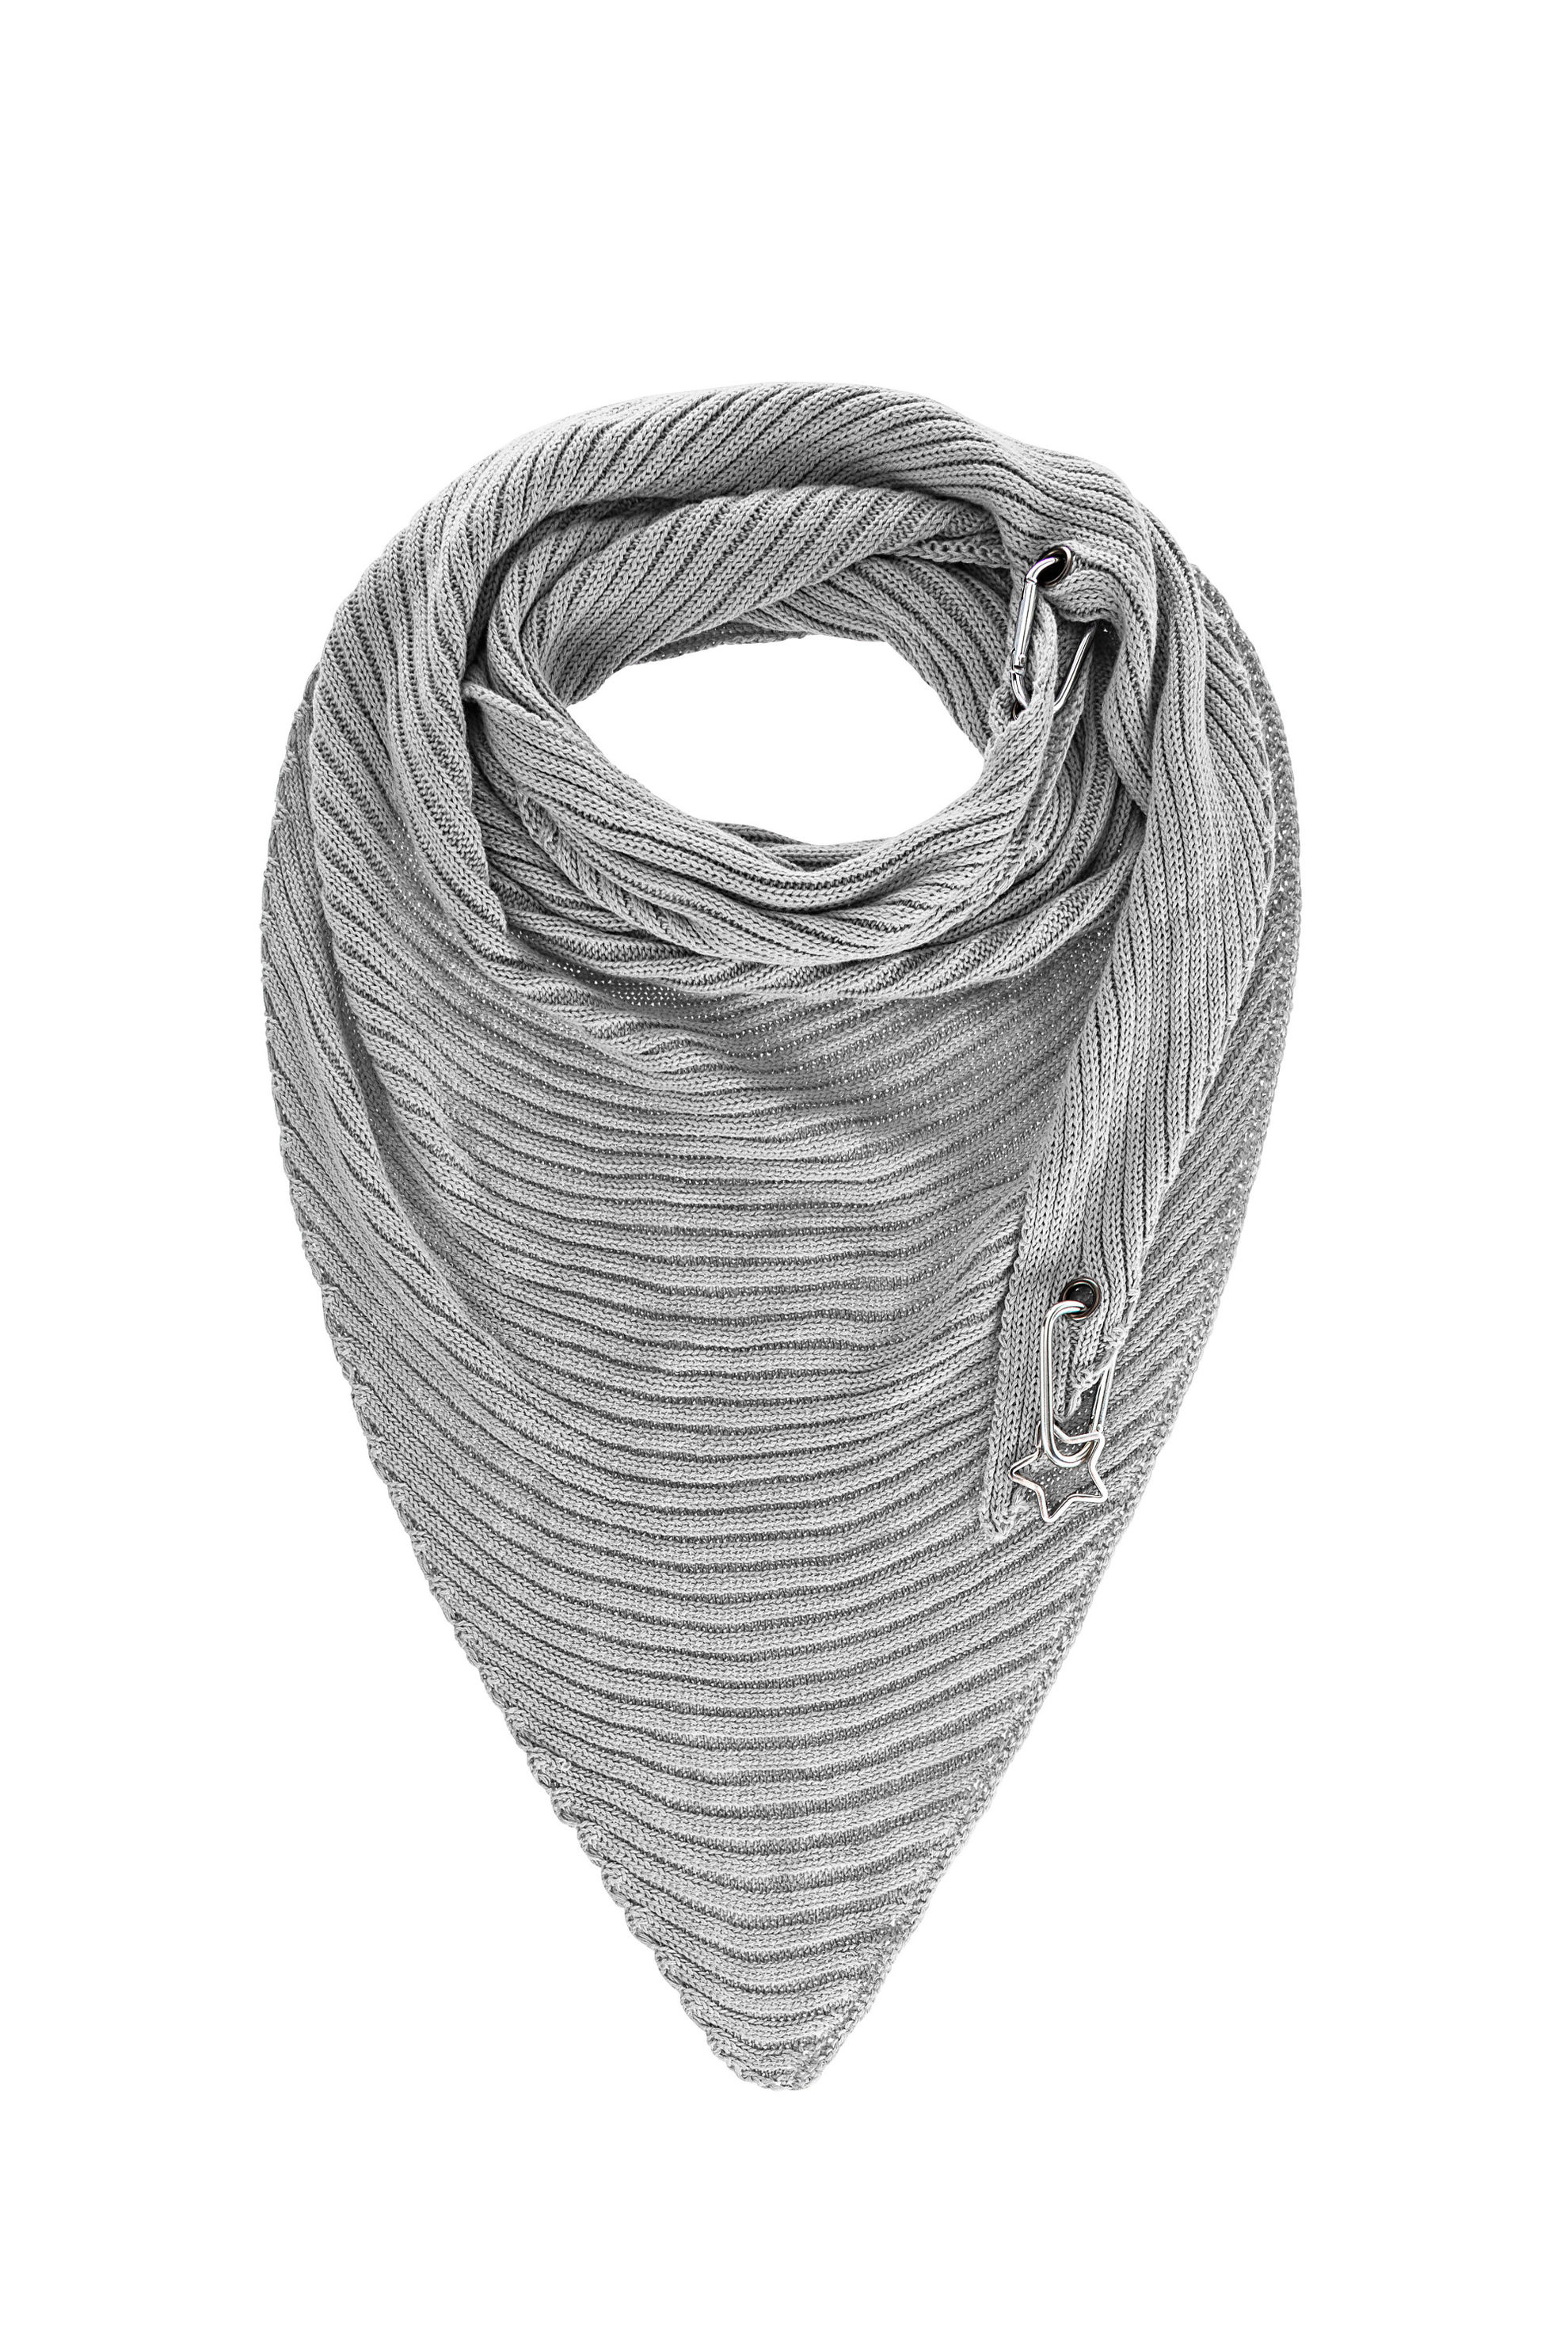 Schal Trasa aus Baumwolle, 155x75 cm Farbe: grau | Weltbild.ch